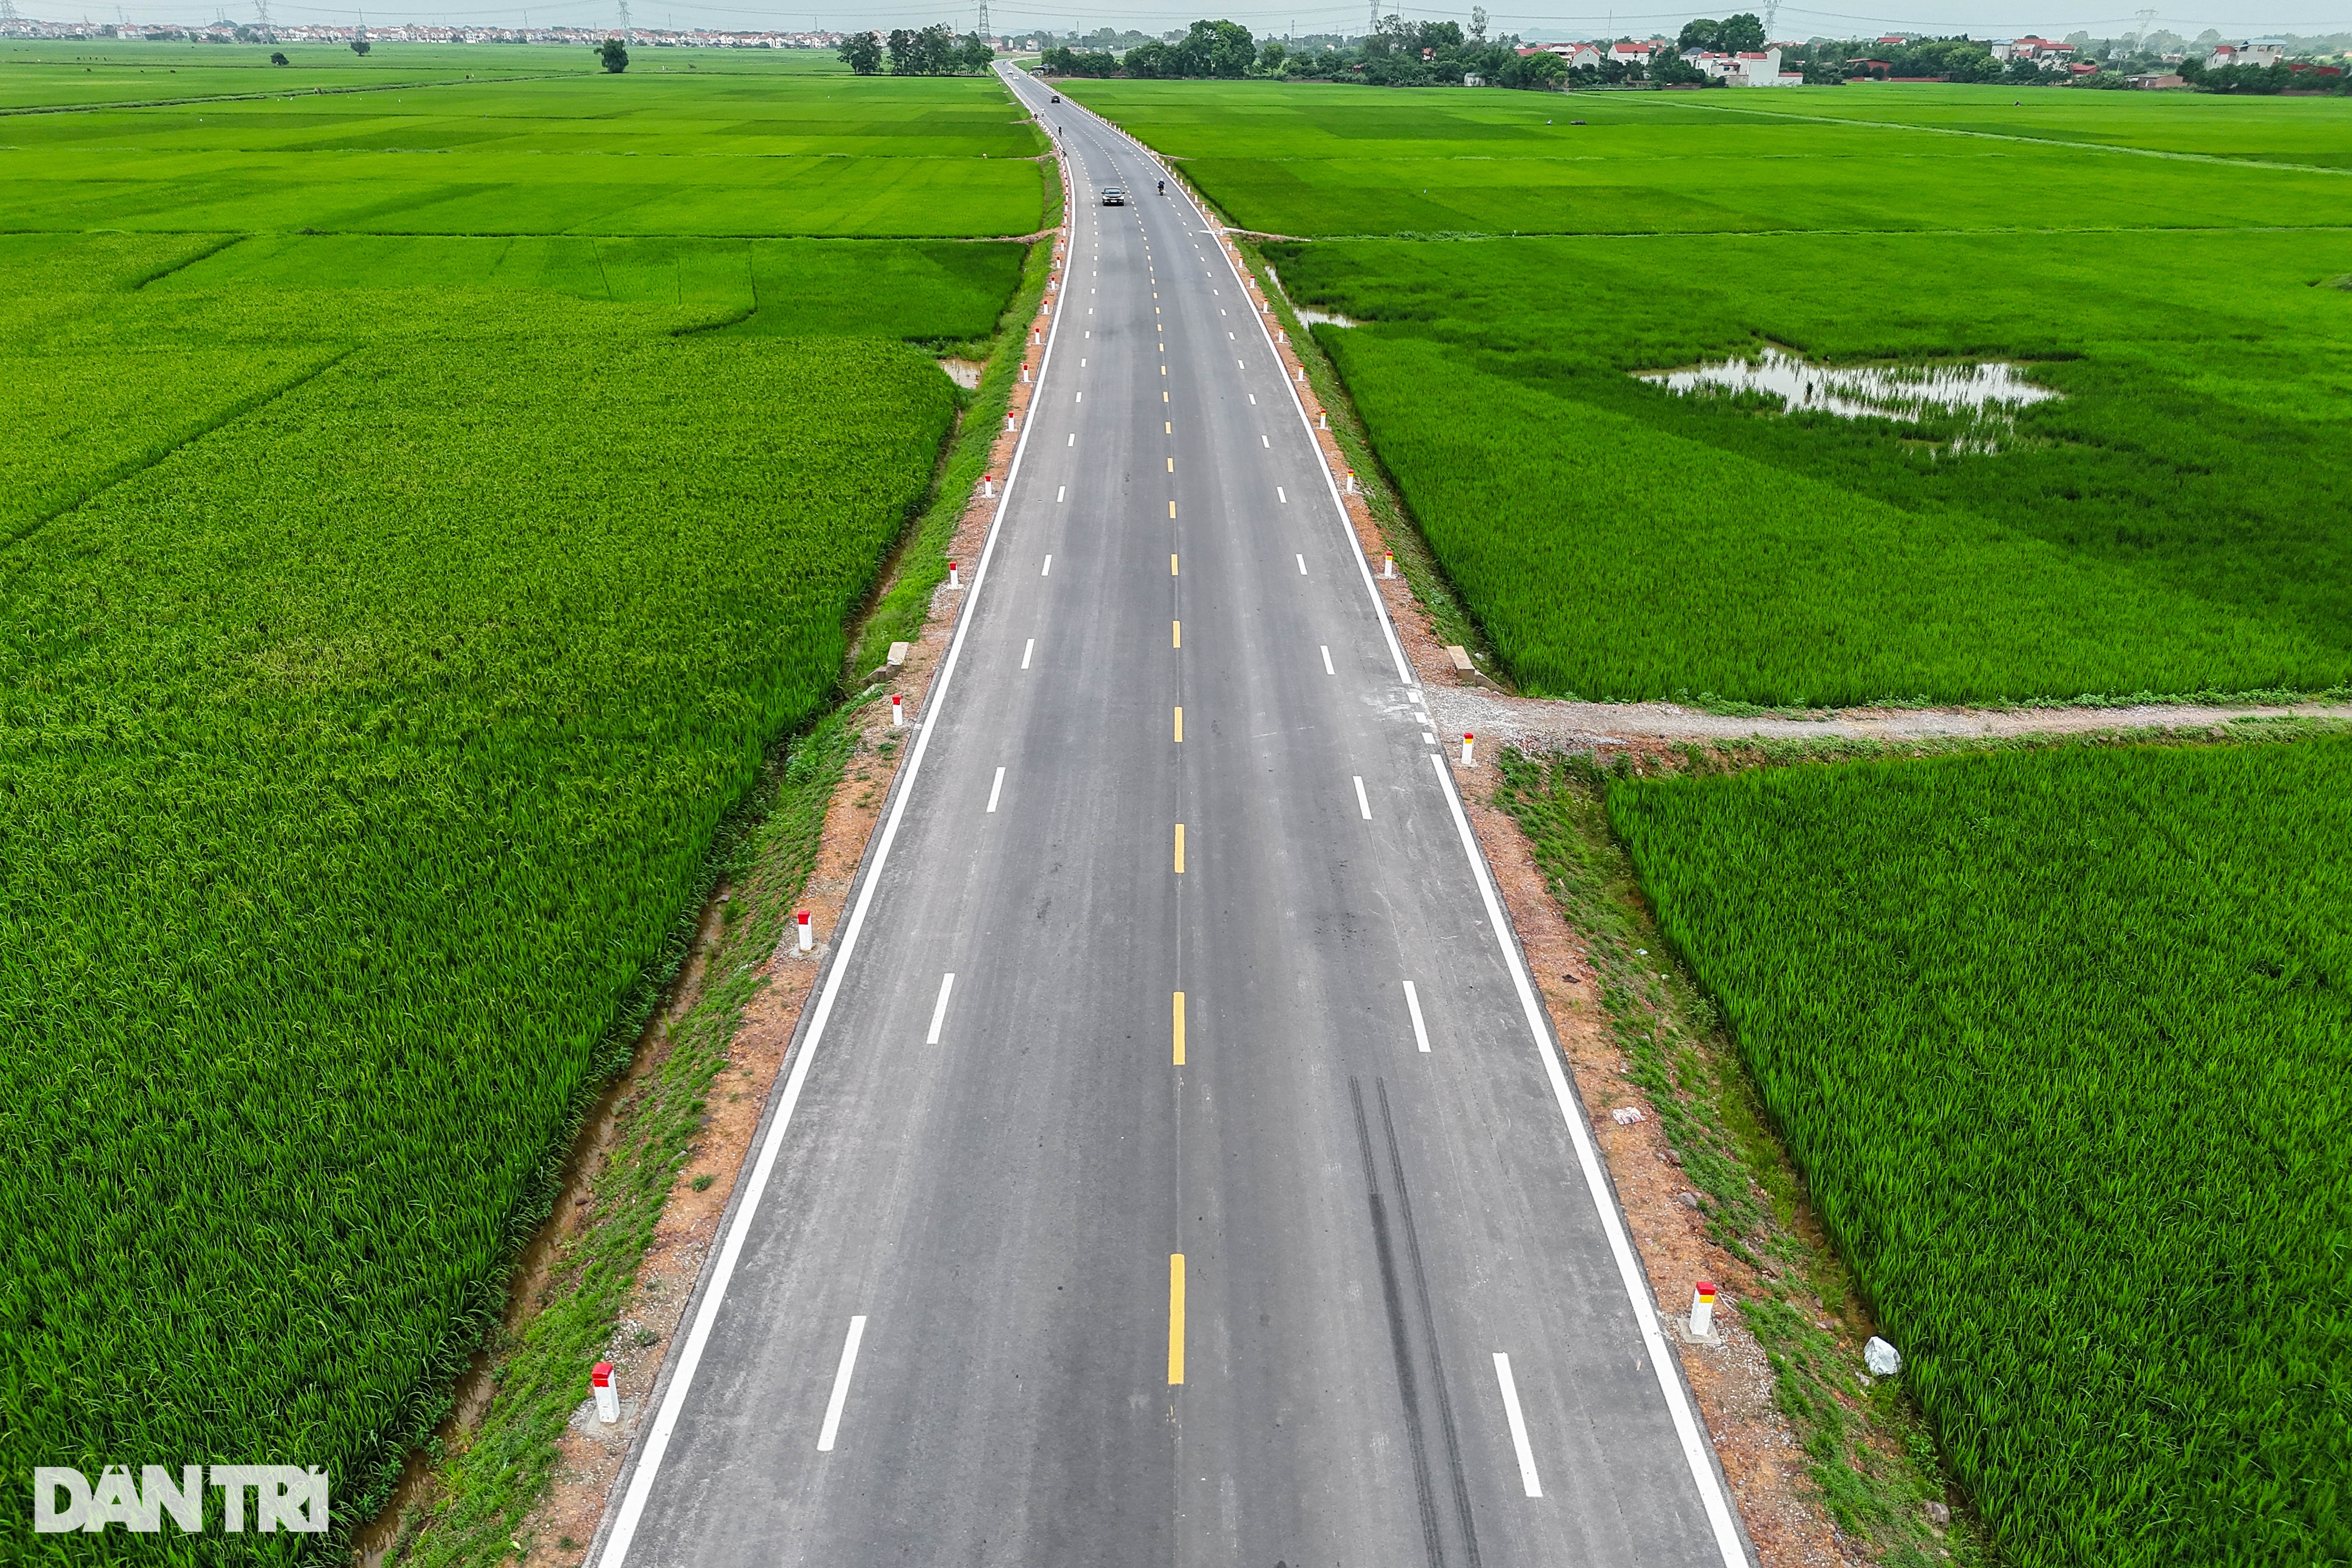 View - Tuyến đường dài 4,2km, trị giá gần 200 tỷ đồng kết nối Hà Nội - Bắc Giang | Báo Dân trí